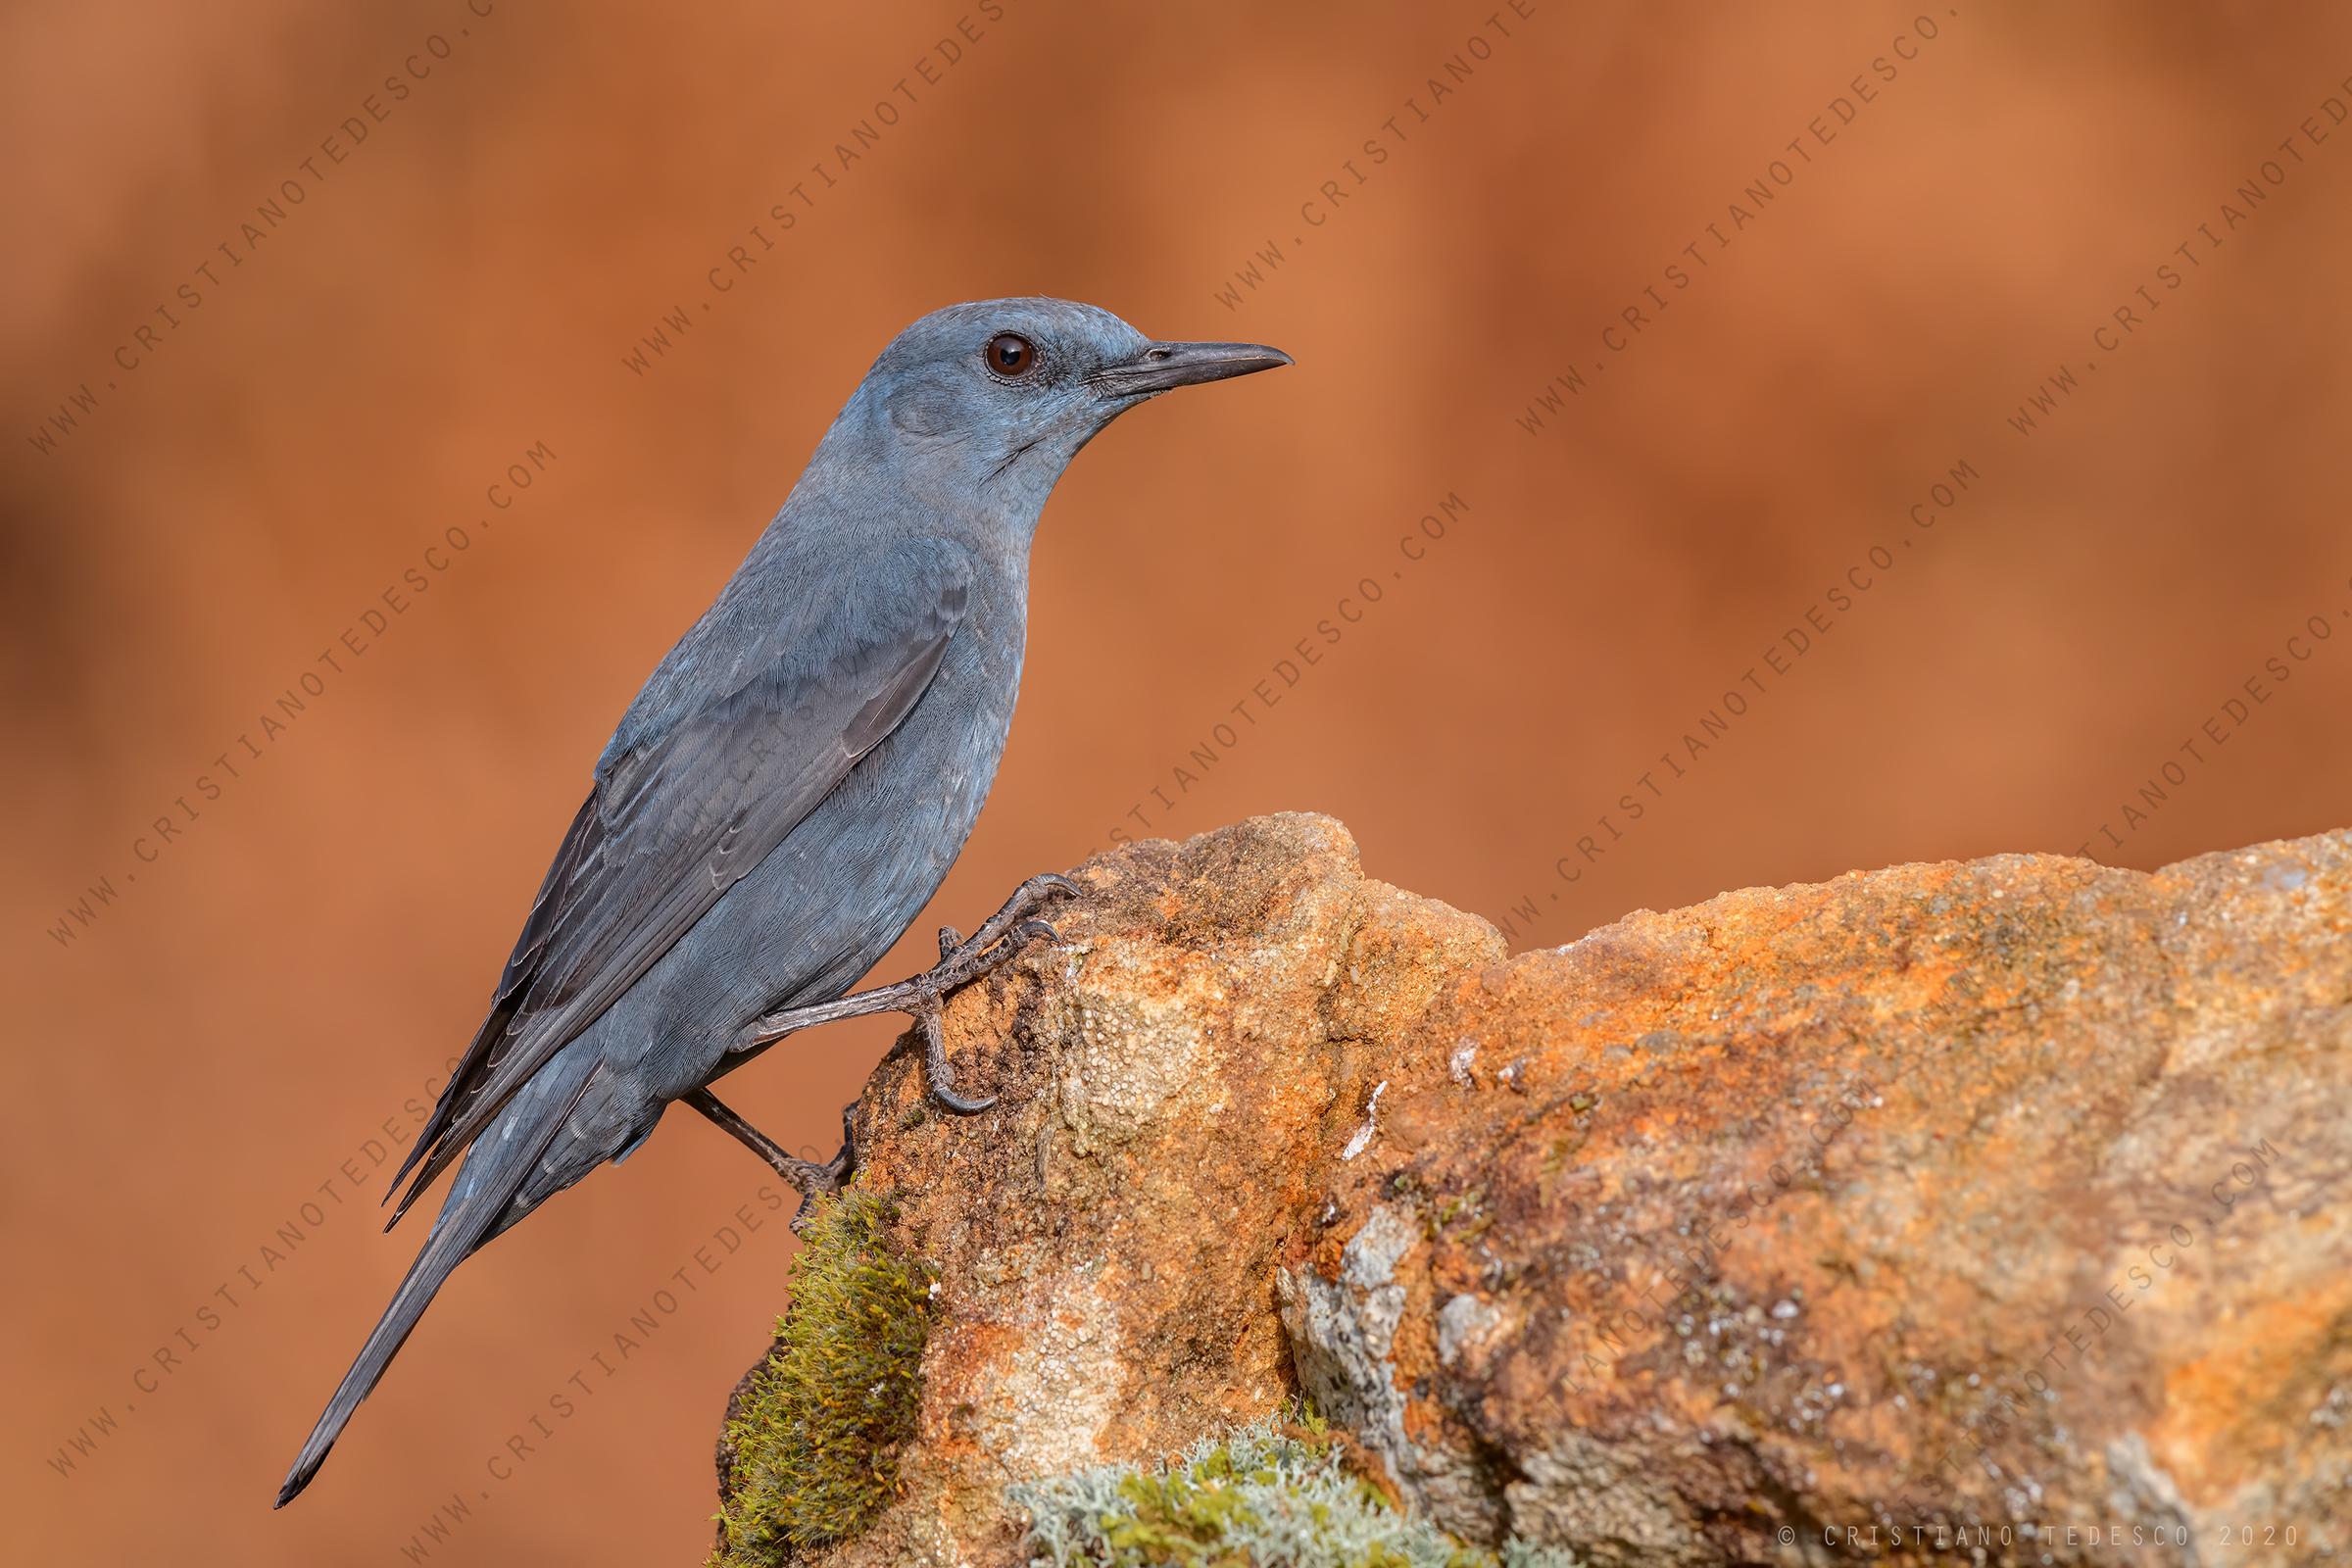 aprile 2020 - le foto del mese - foto di passero solitario (Monticola solitarius)